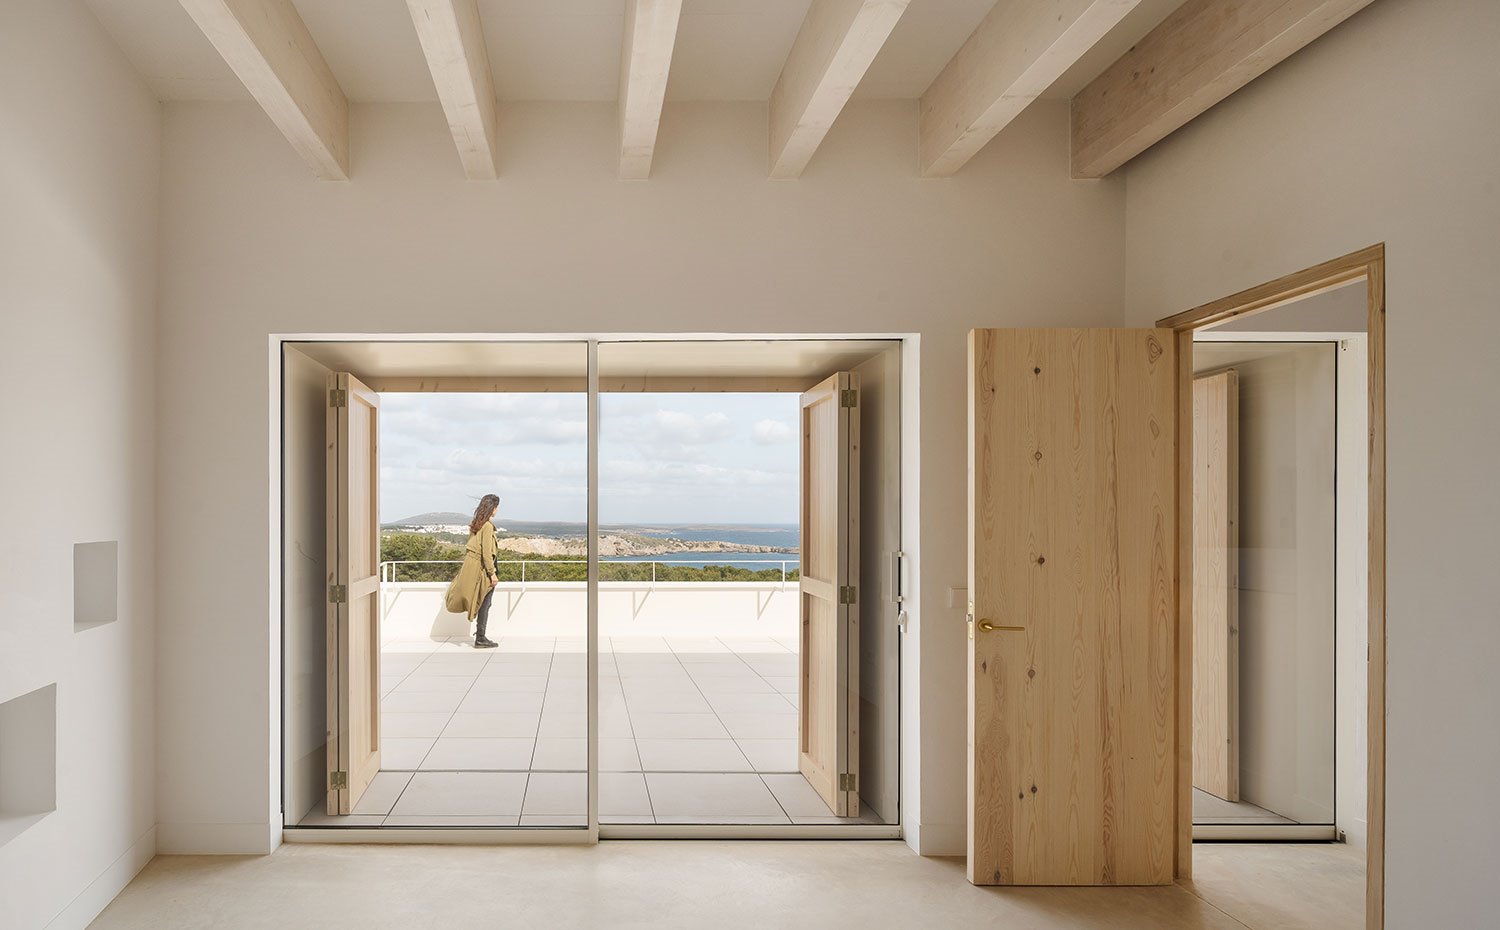 Interior habitación con cerramiento de cristal, puerta de madera y terraza exterior